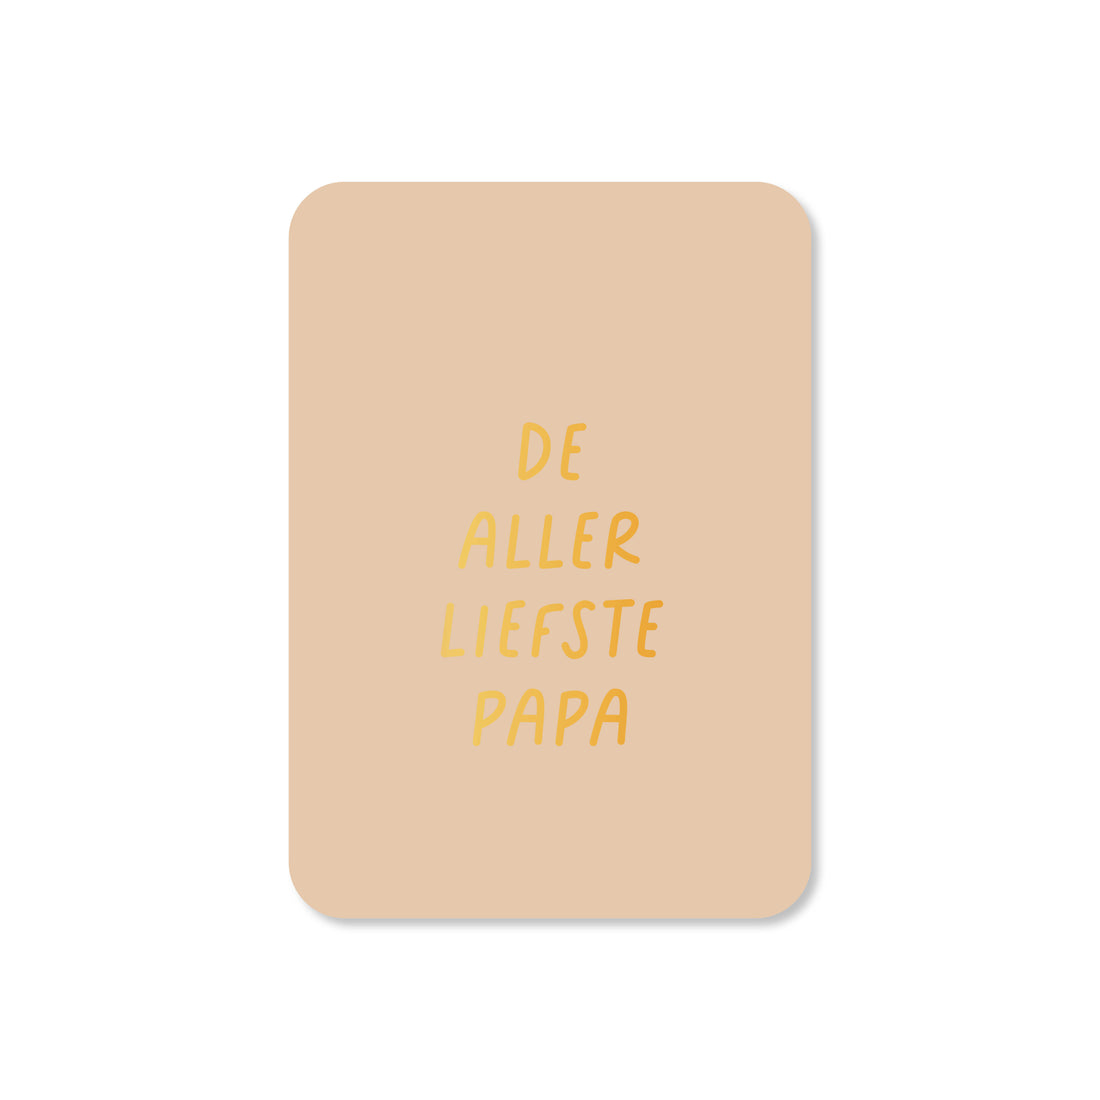 Minikaart Allerliefste papa (met goudfolie)